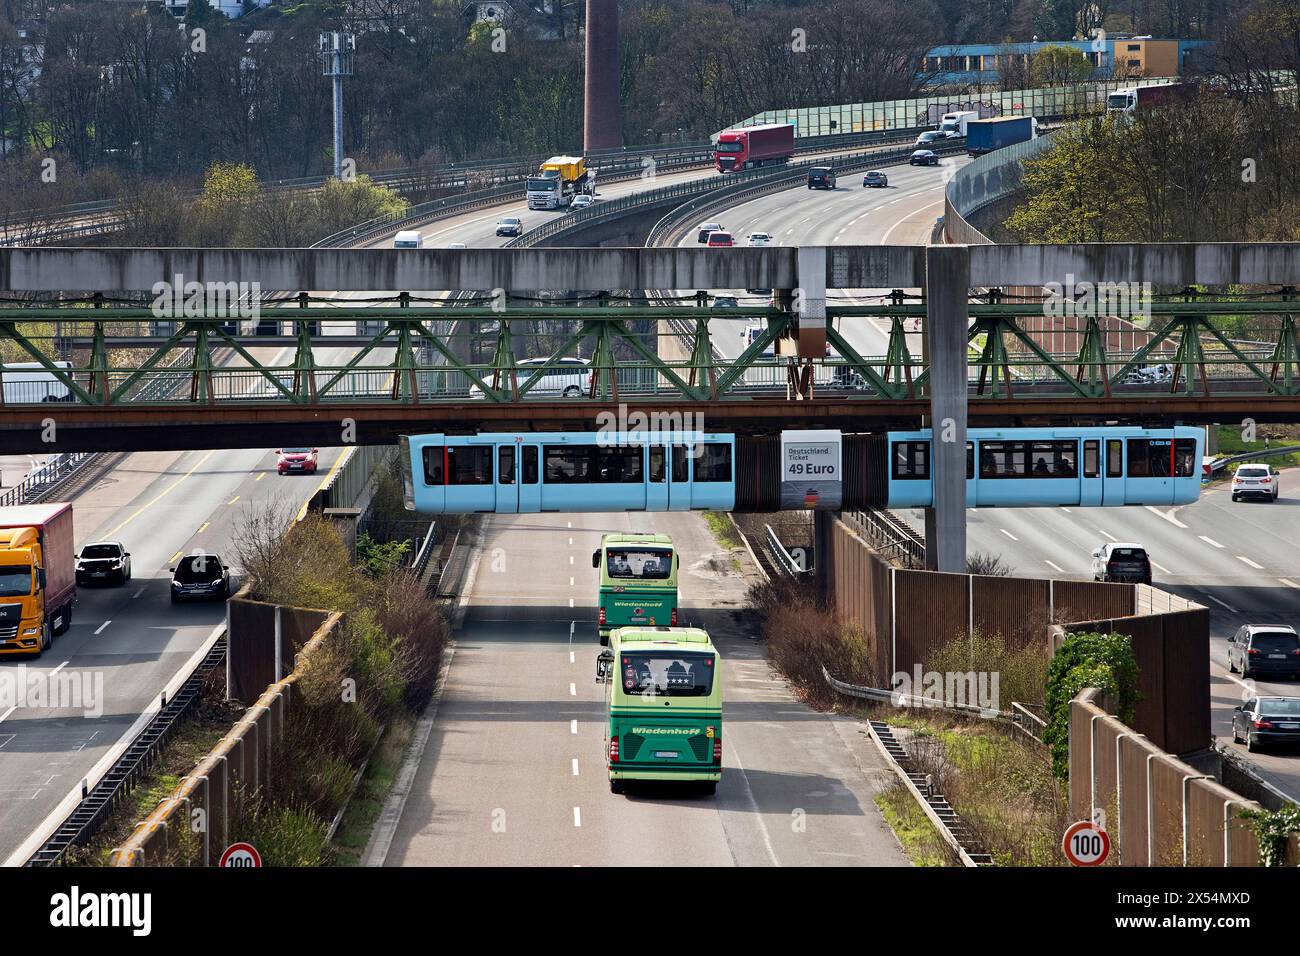 La ferrovia sospesa di Wuppertal attraversa l'autostrada A46 allo svincolo di Sonnborn, Germania, Renania settentrionale-Vestfalia, Bergisches Land, Wuppertal Foto Stock